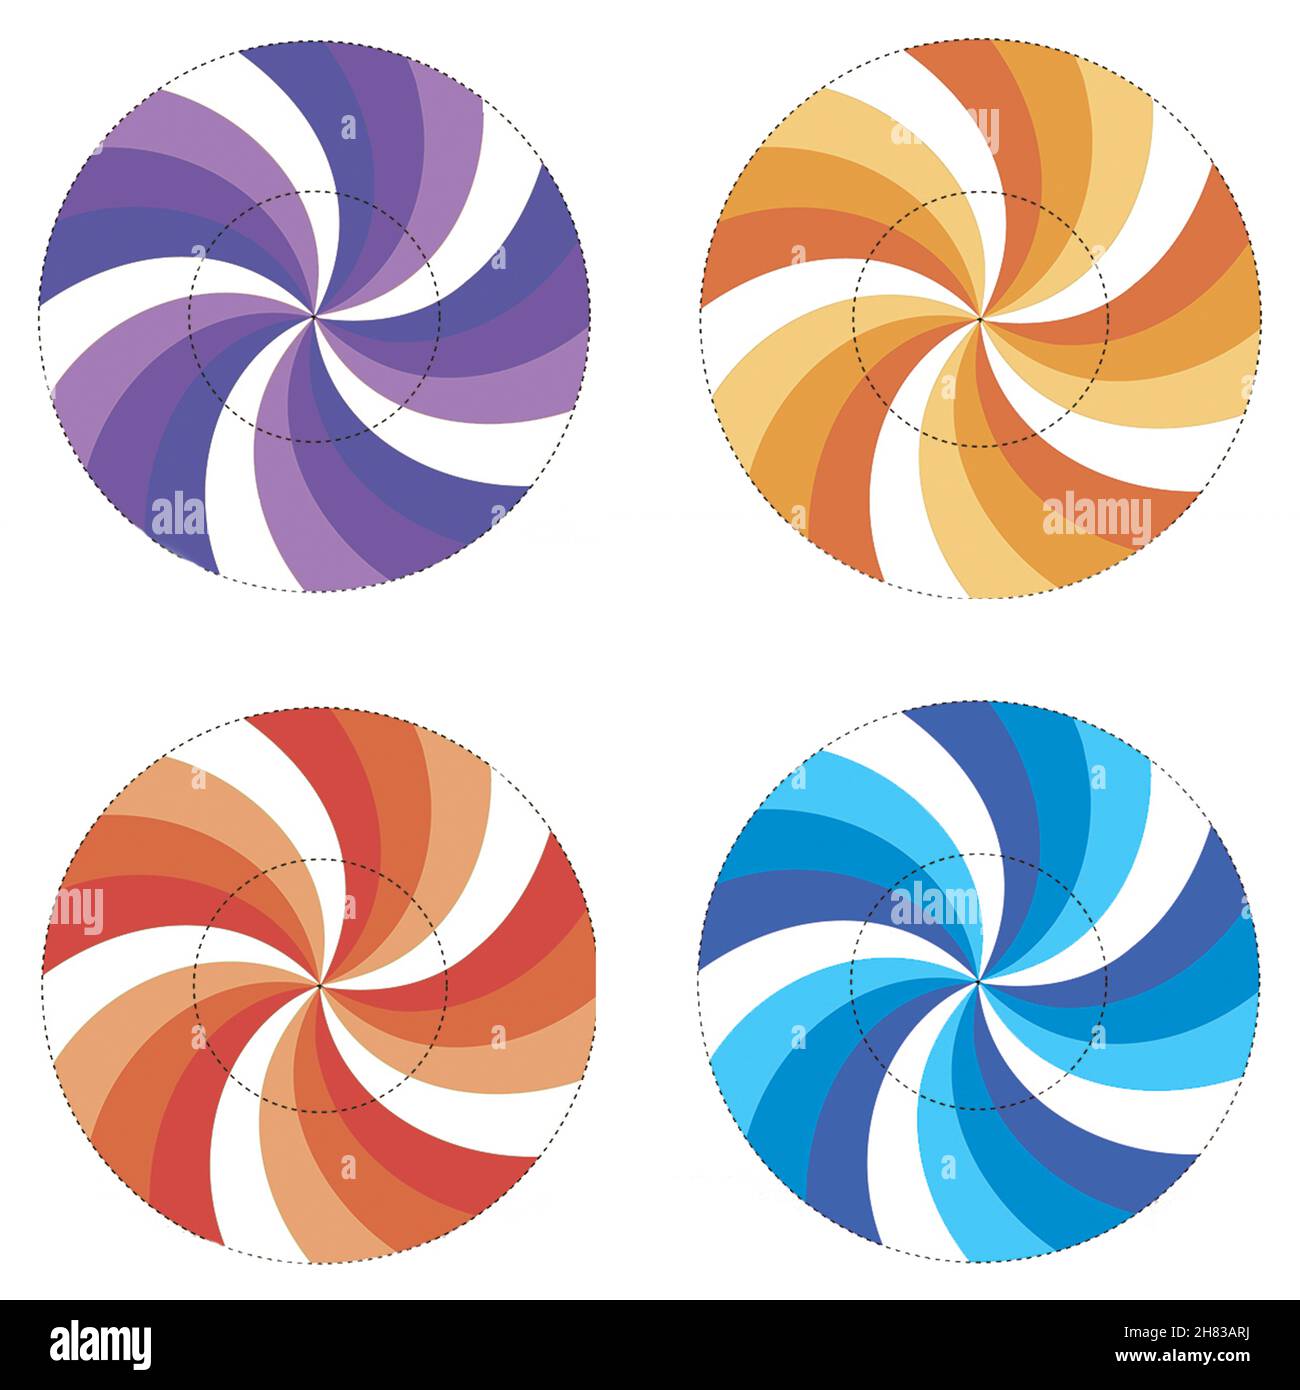 Icônes de plaque définies avec des motifs de couleur isolés sur fond blanc, illustration.Collection d'icônes rondes texturées, muffins circulaires ou petits gâteaux Banque D'Images